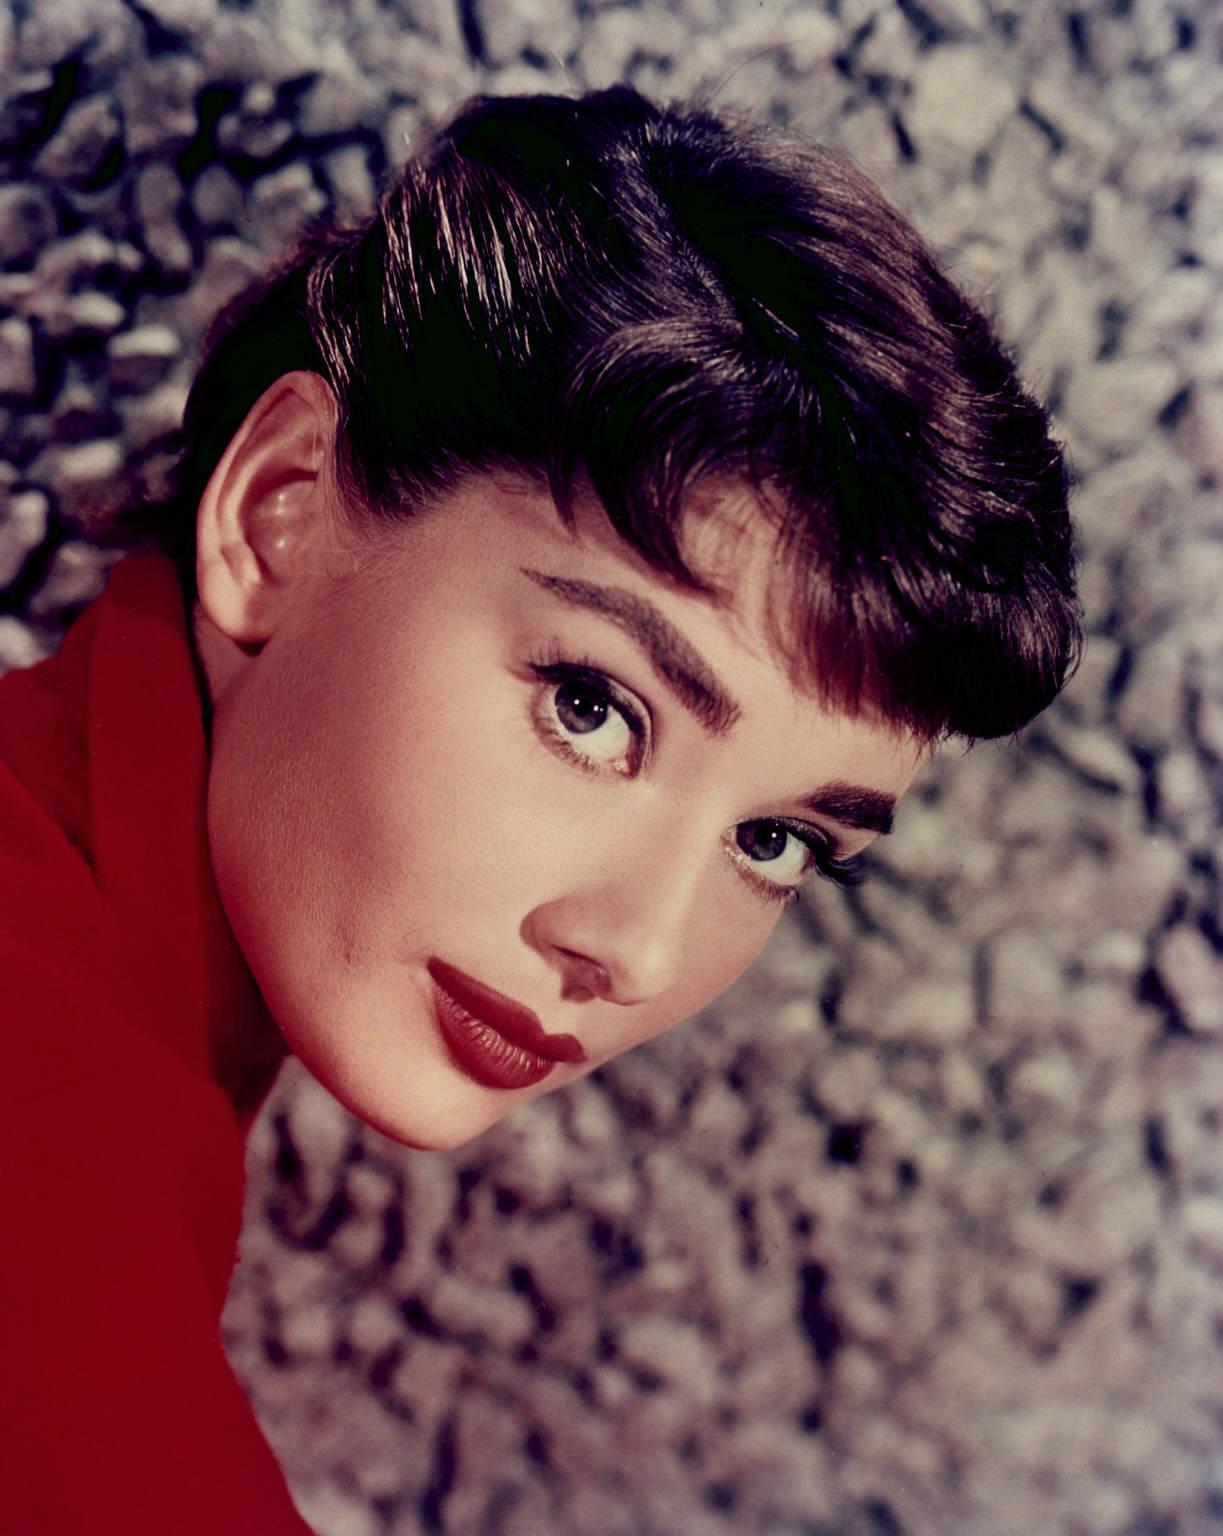 Audrey Hepburn wallpaper №11039.